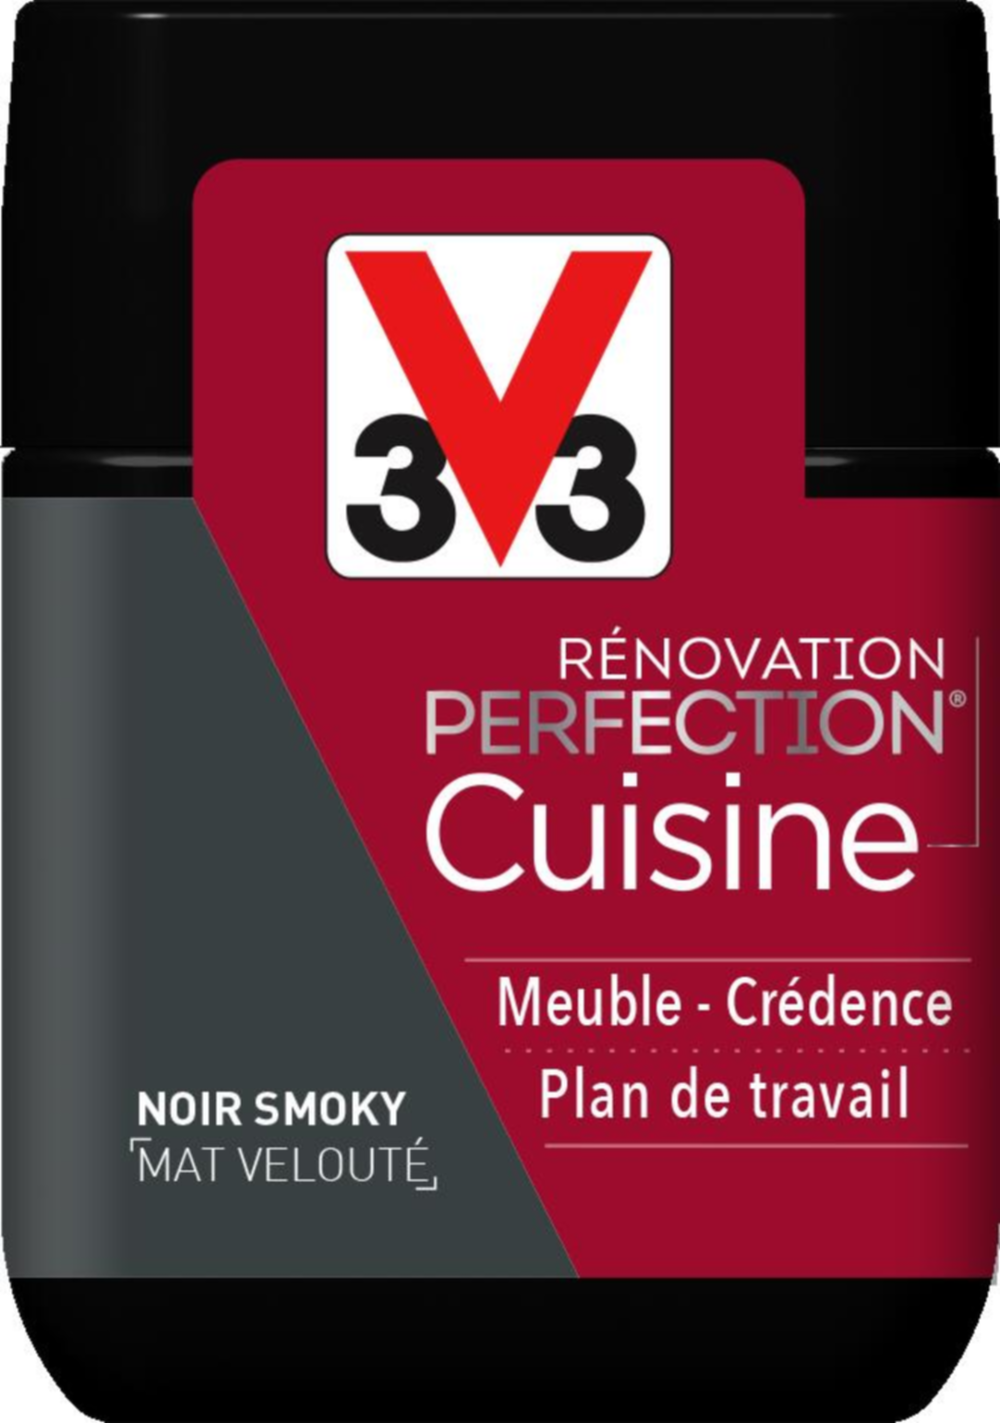 Testeur de peinture rénovation cuisine Perfection noir smoky mat 75ml - V33